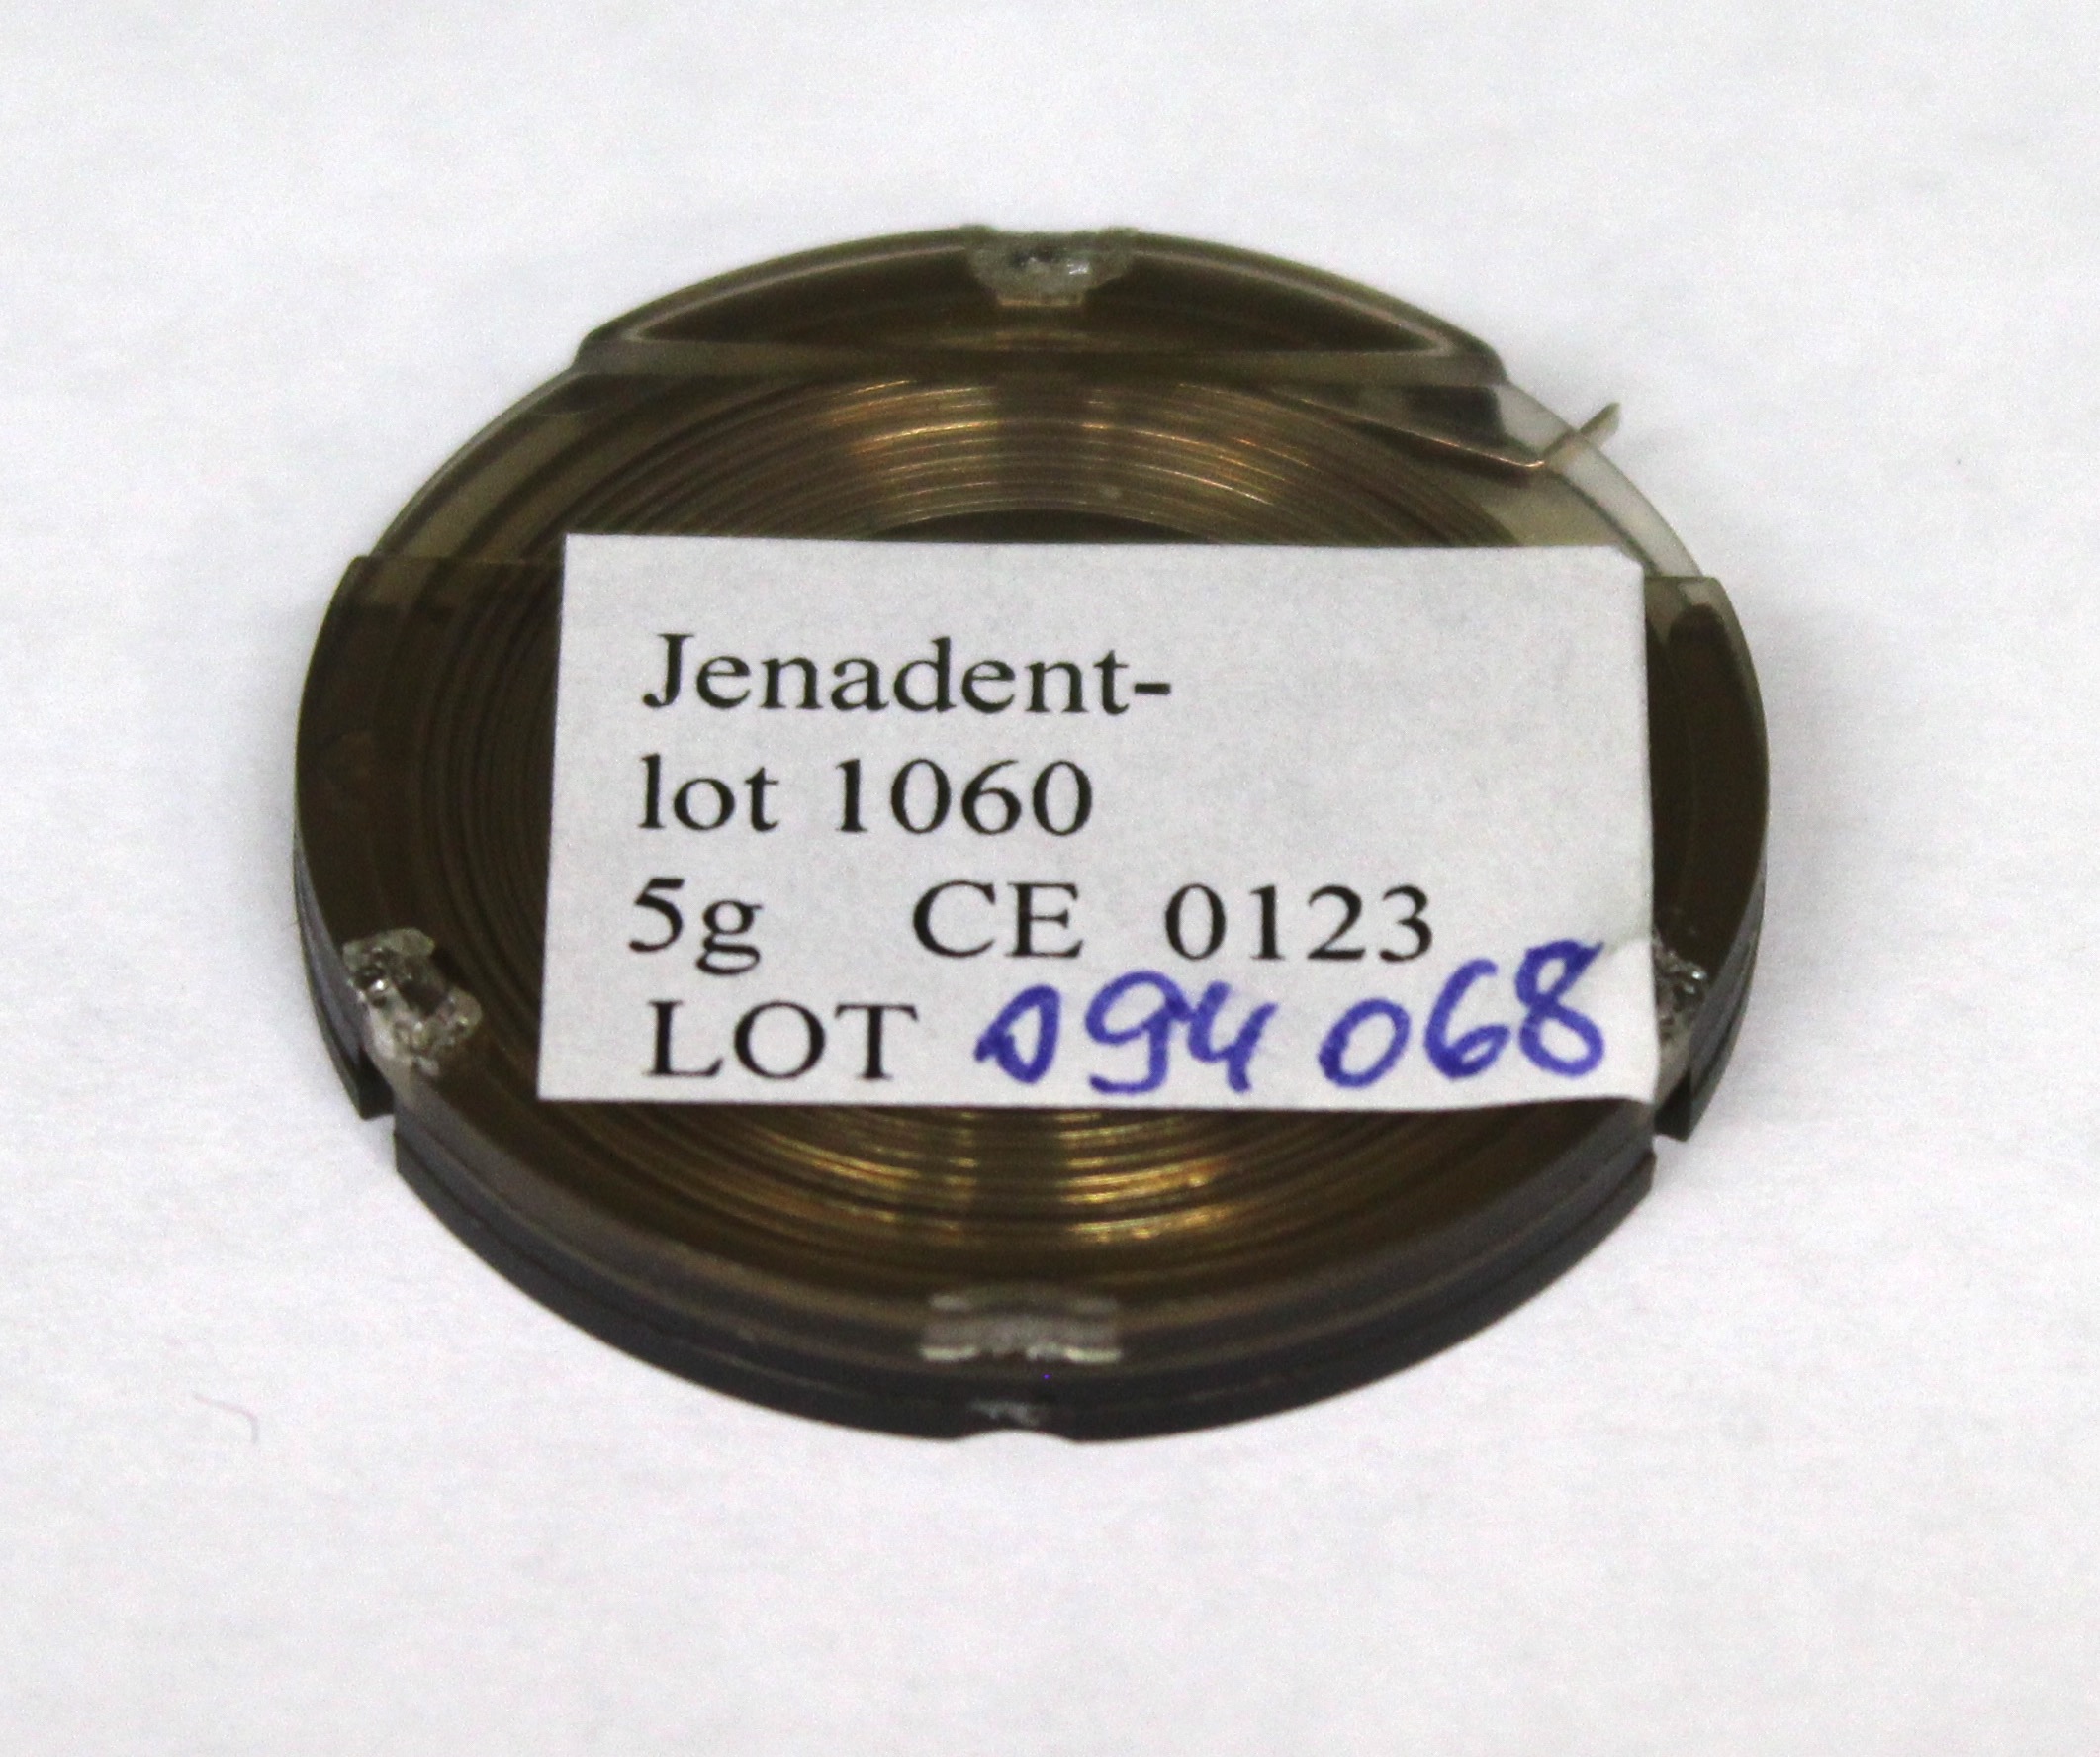 Jenadentlot 1060